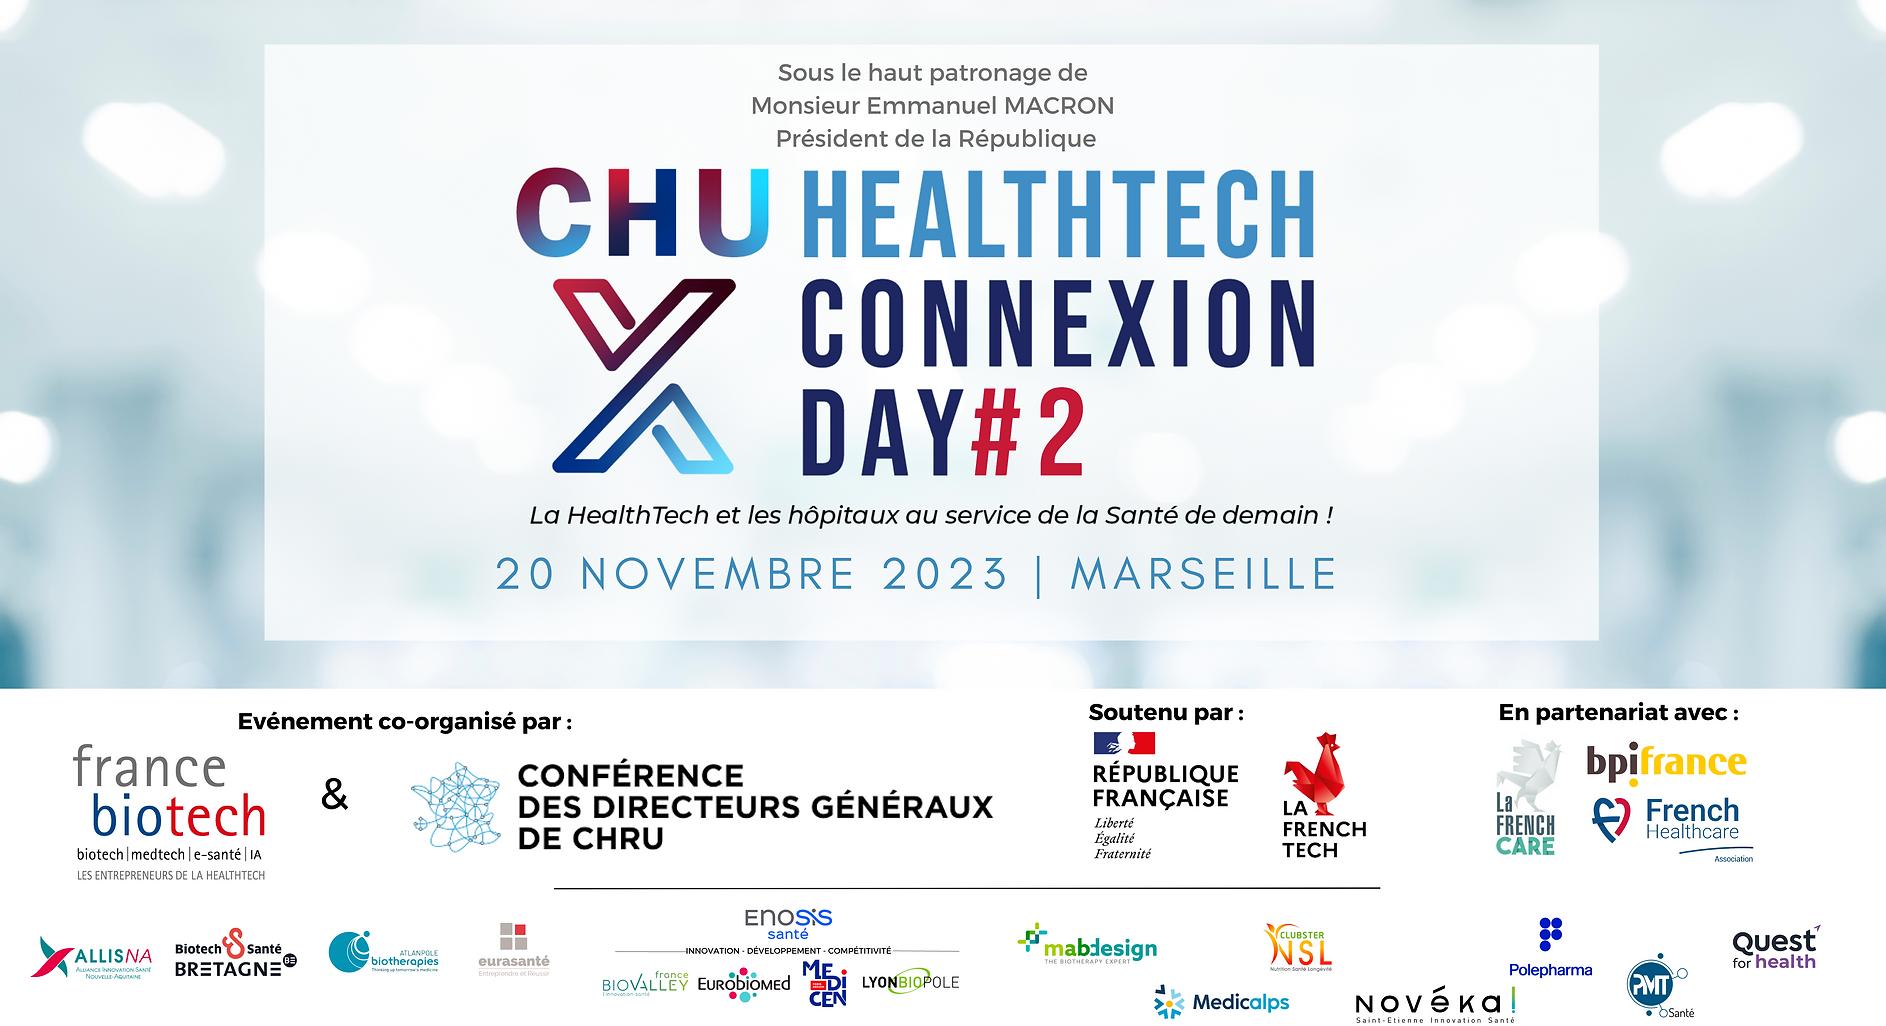 CHU HealtTech Connexion Day #2